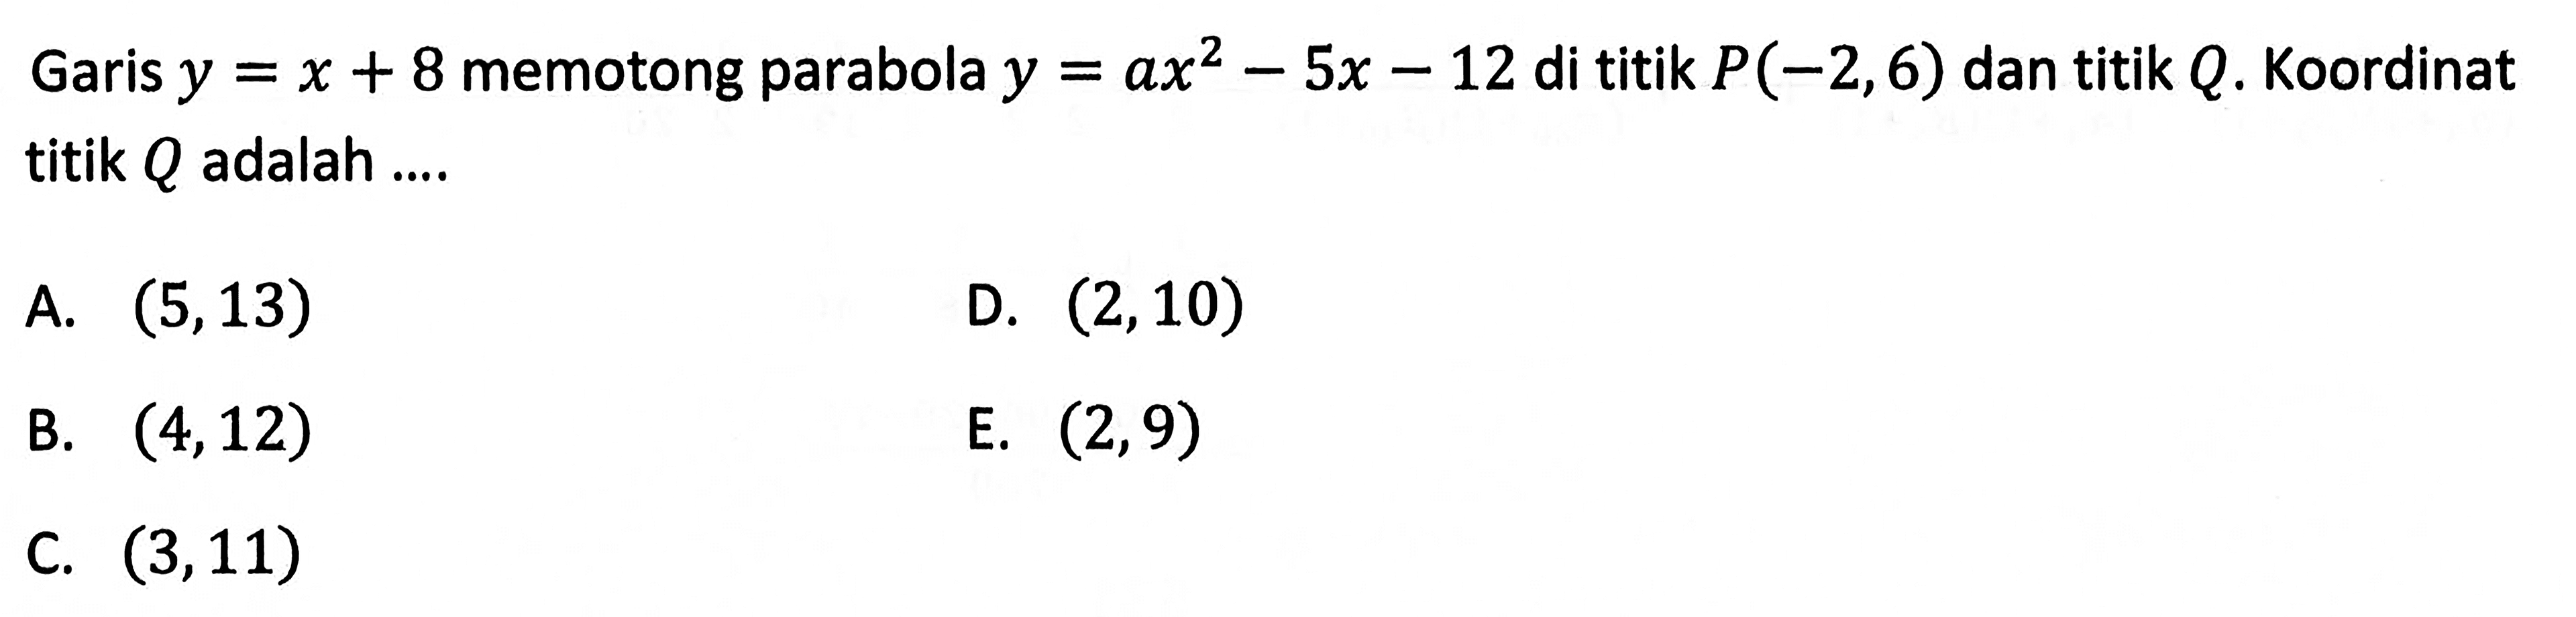 Garis  y=x+8  memotong parabola  y=ax^2-5 x-12  di titik  P(-2,6)  dan titik  Q .  Koordinat titik  Q  adalah ....A.  (5,13) D.  (2,10) B.  (4,12) E.  (2,9) C.  (3,11) 